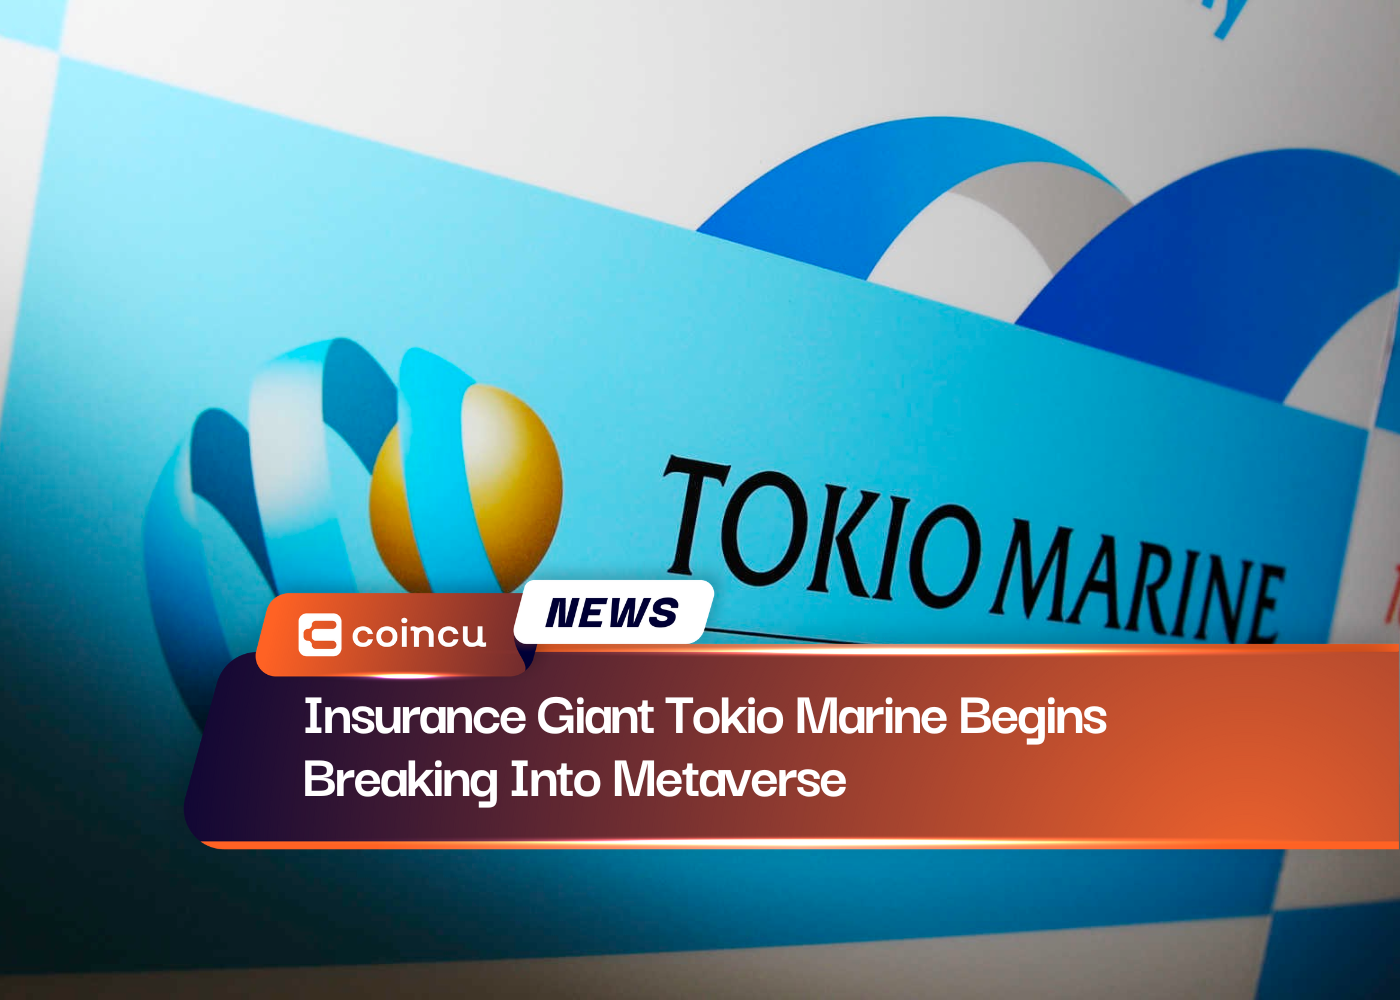 거대 보험 회사인 Tokio Marine이 메타버스에 진출하기 시작했습니다.